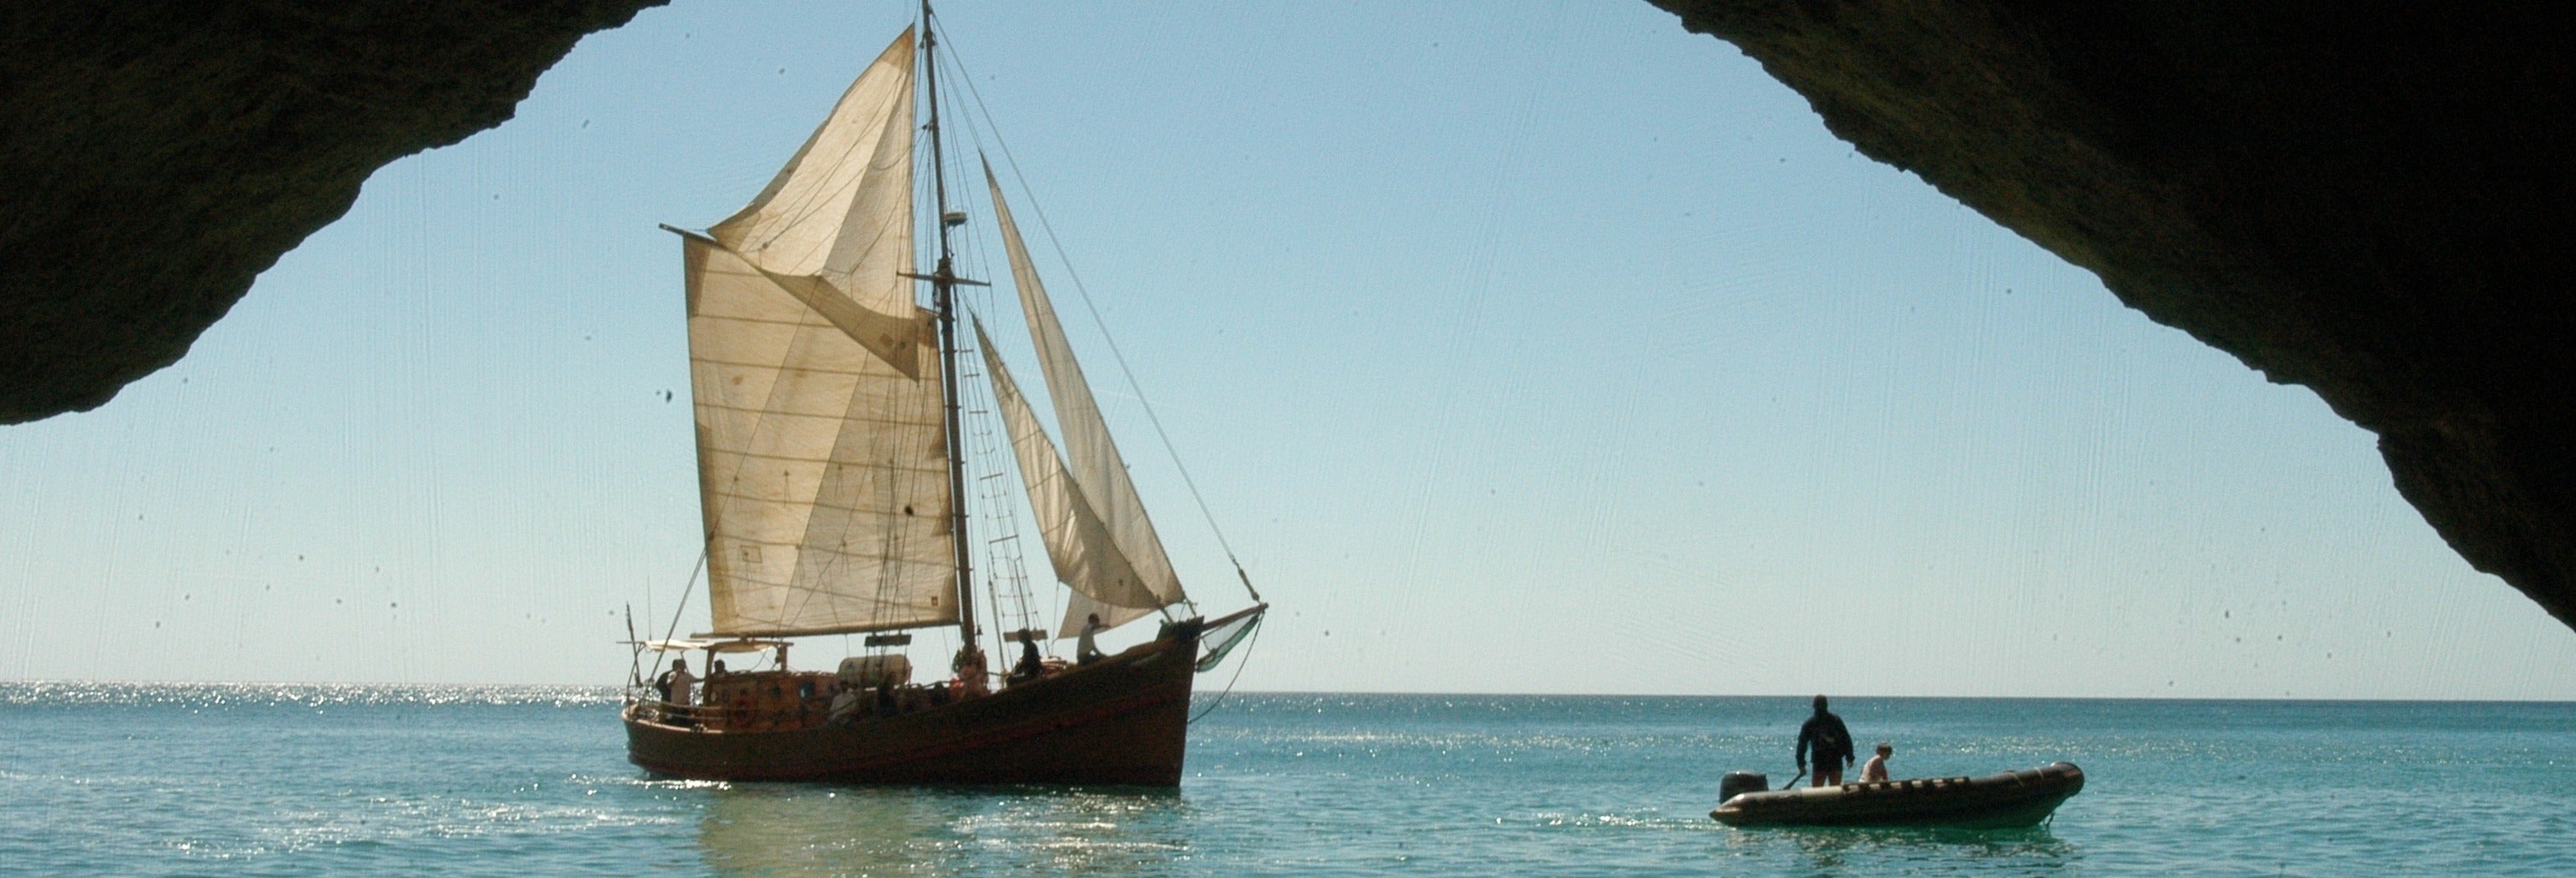 Passeio pelas grutas do Algarve de barco pirata de meio dia